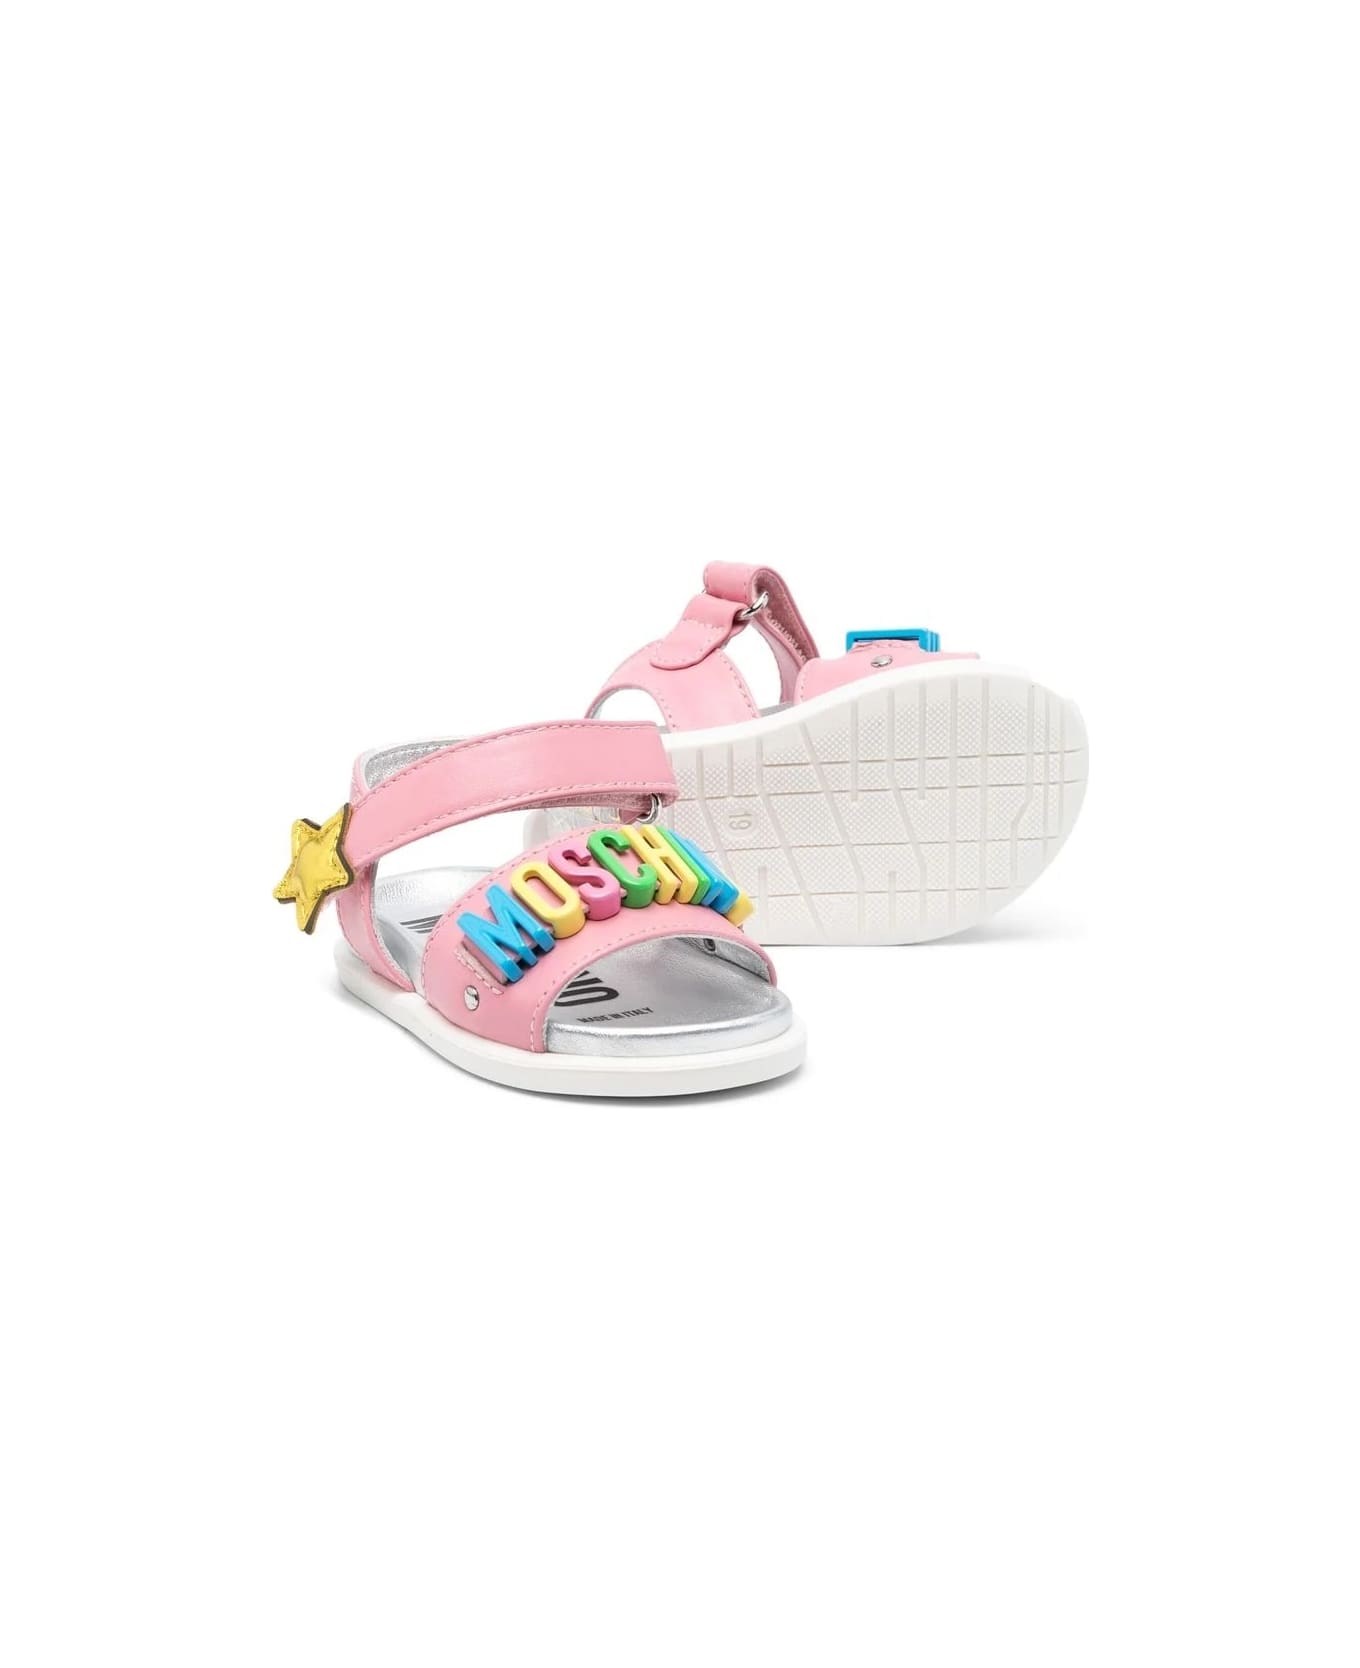 Moschino Strap Sandals - Pink